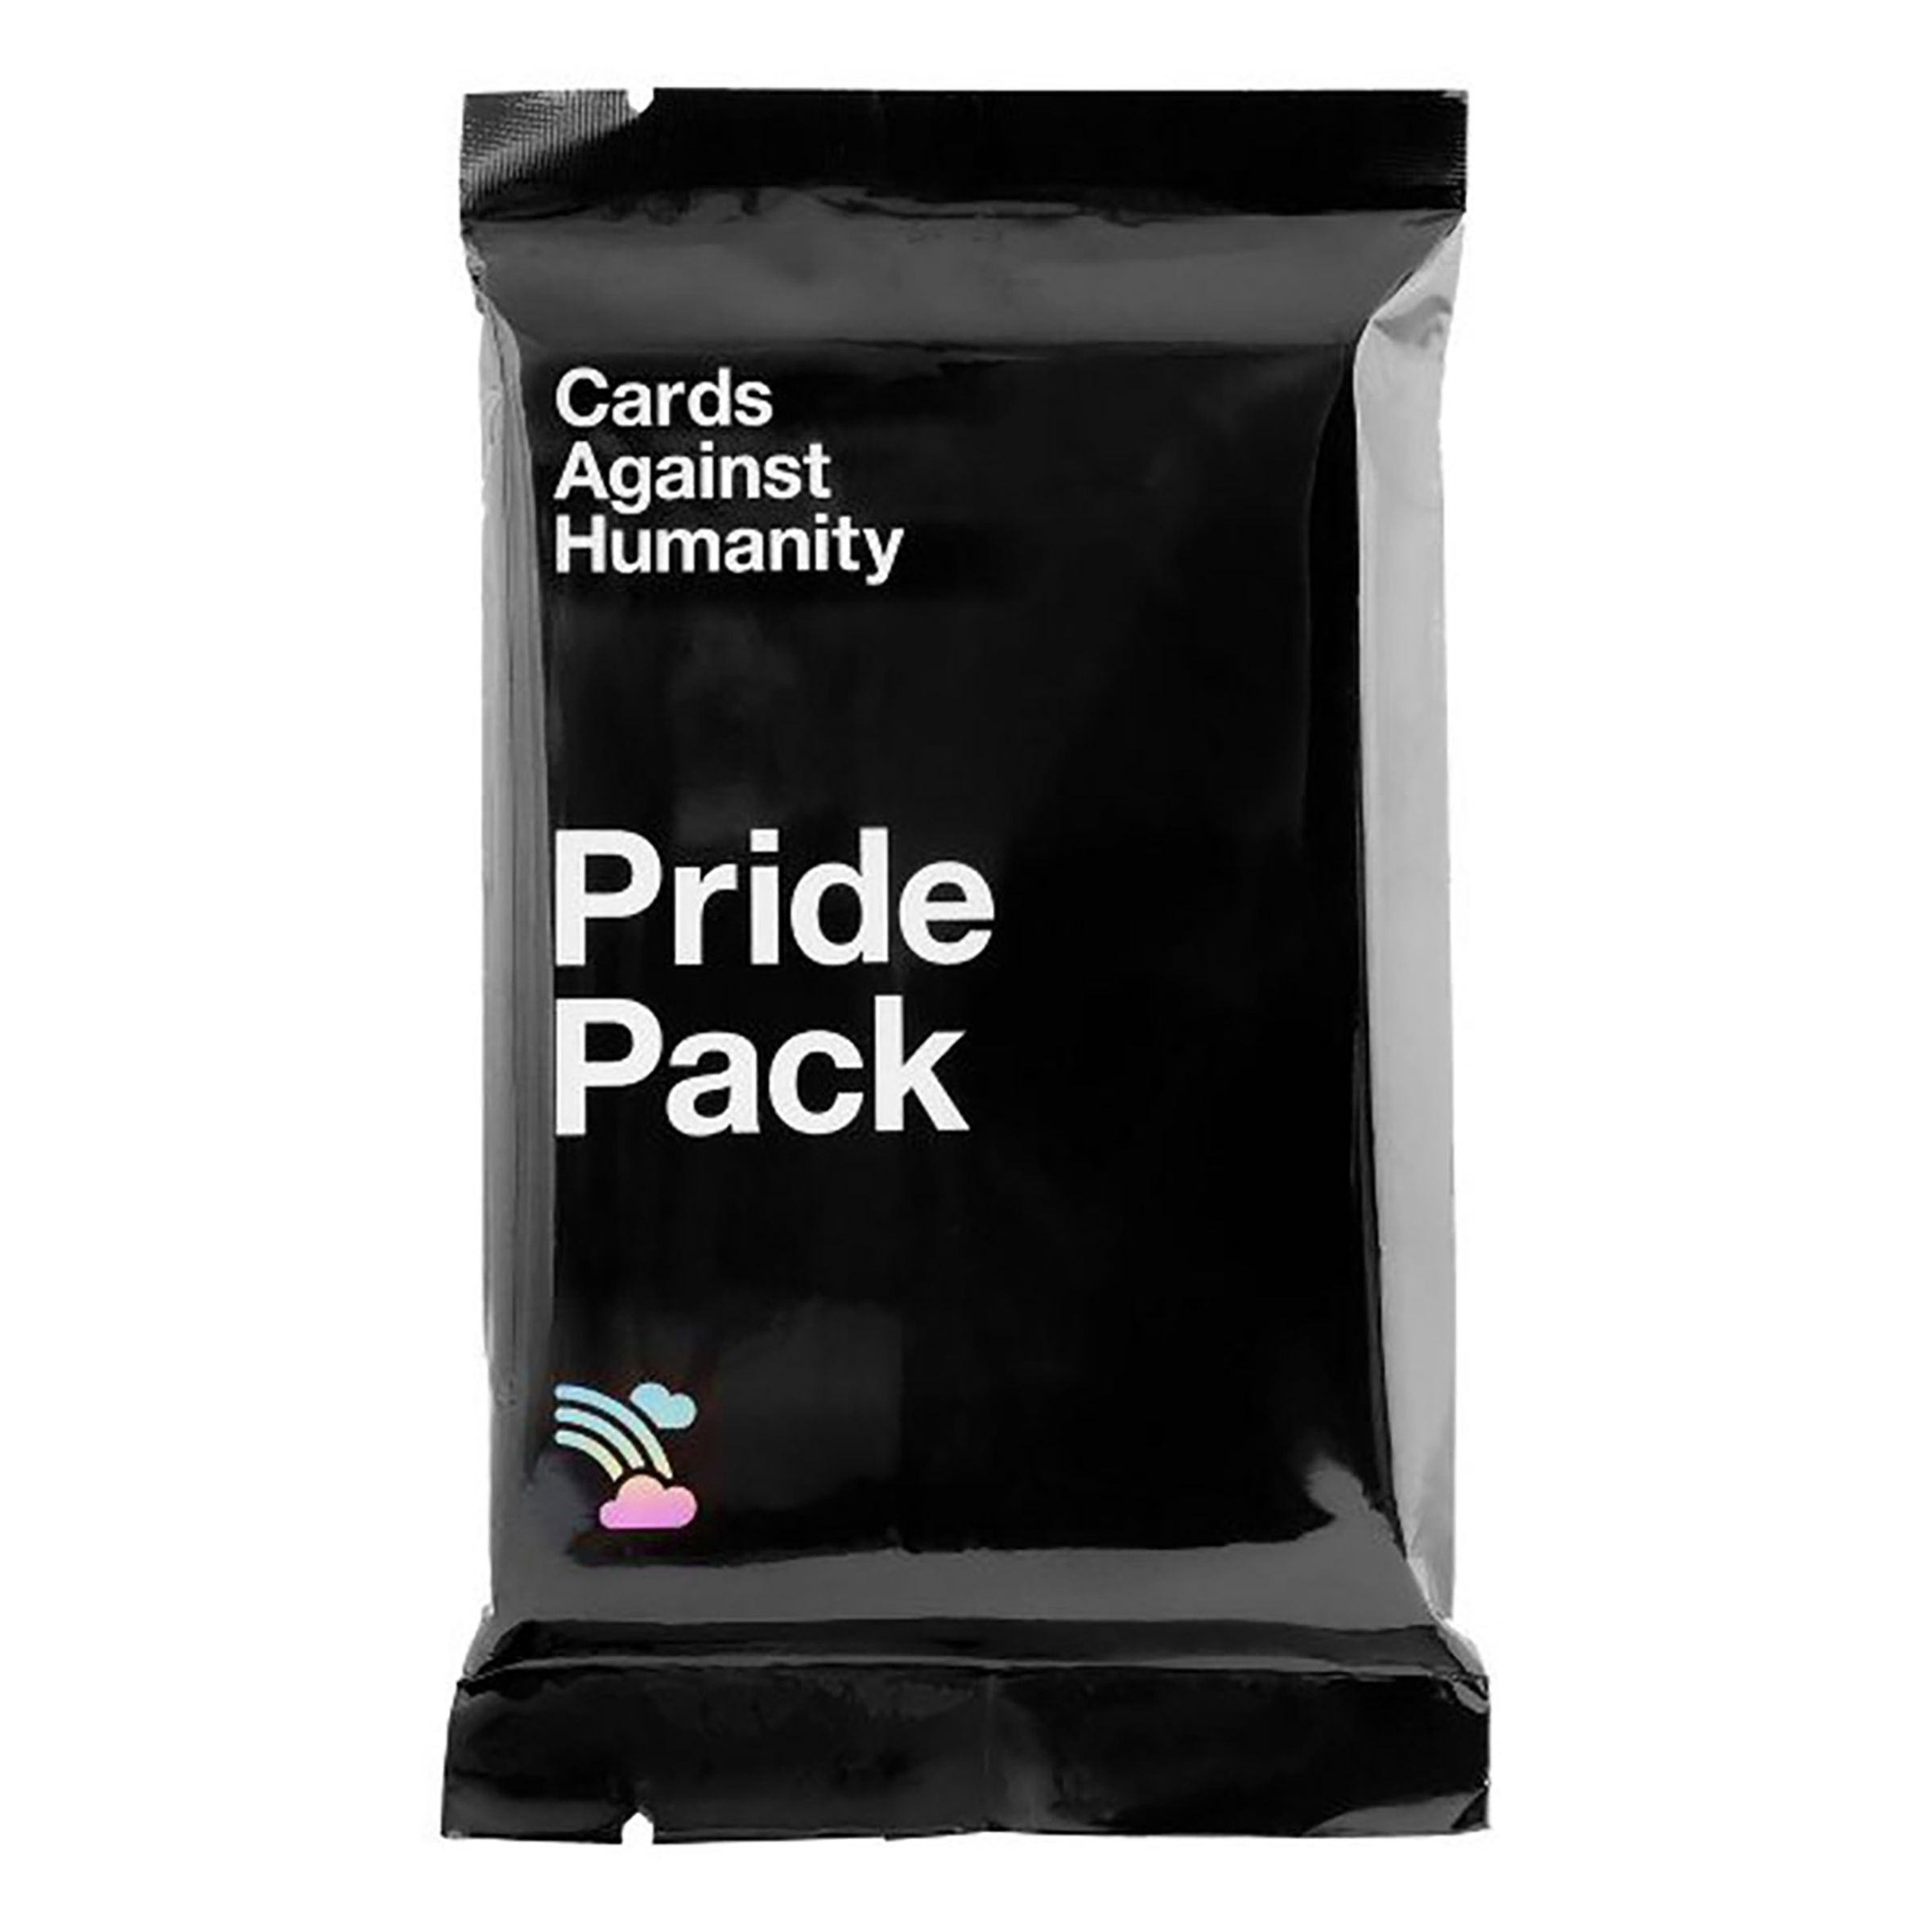 Läs mer om Cards Against Humanity - Pride Pack